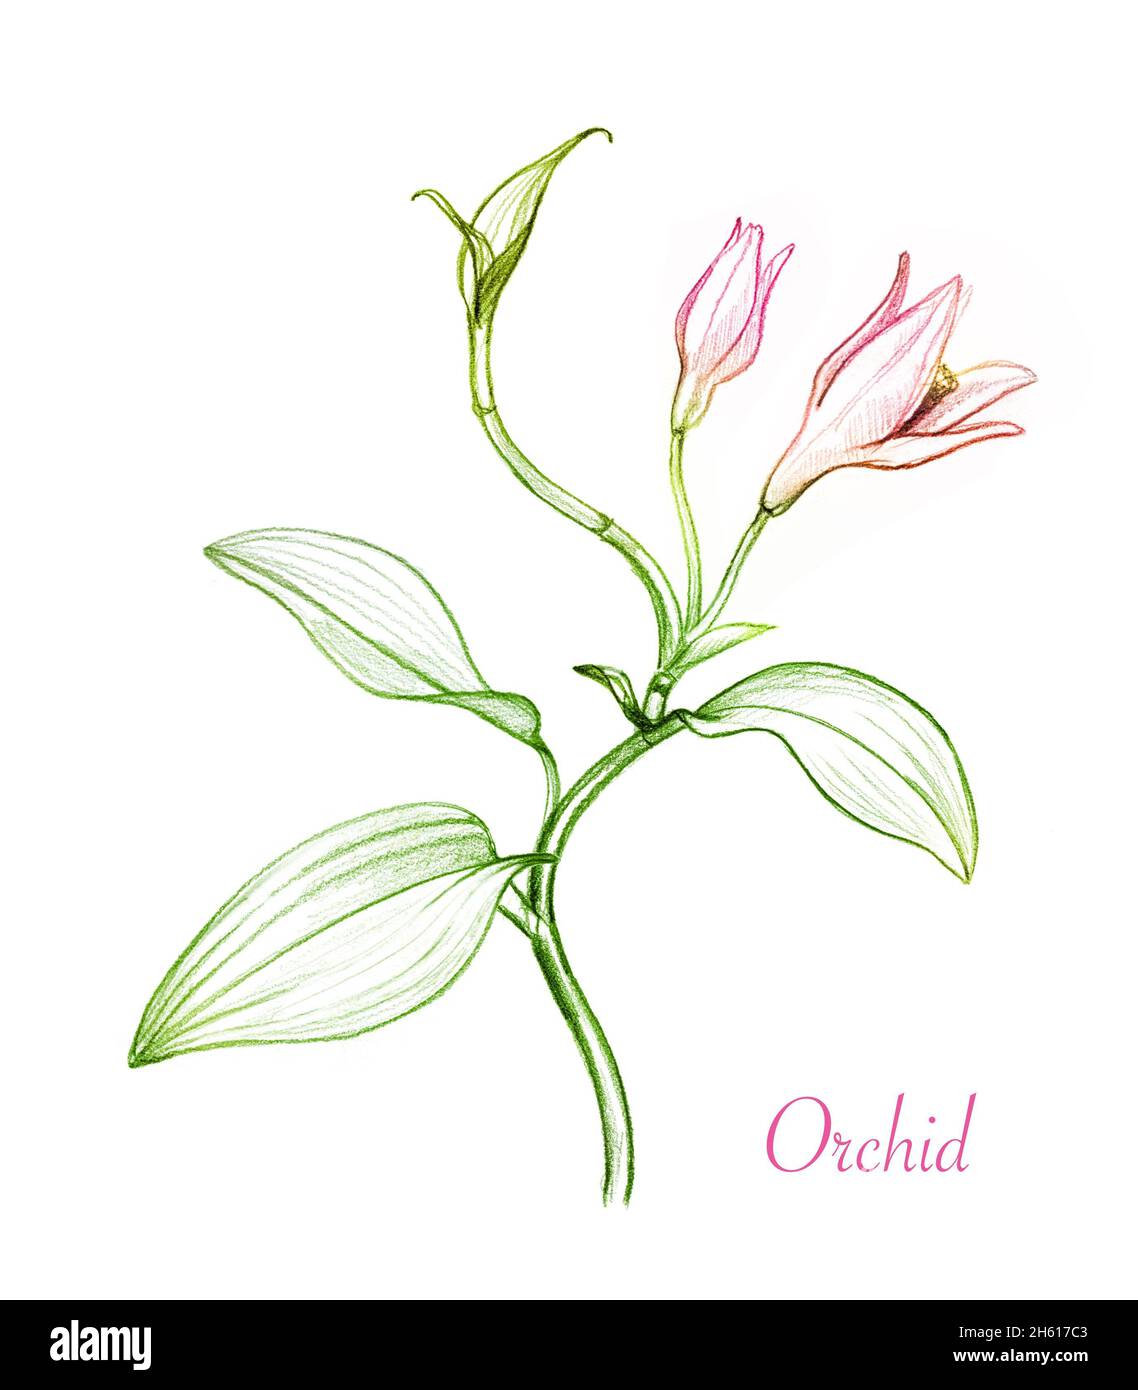 Orchidee Pflanze Farbe Bleistift Skizze. Rosa Blüten, Knospen und Blätter. Botanische handgezeichnete Illustration isoliert auf weißem Hintergrund. Sammlung von Stockfoto